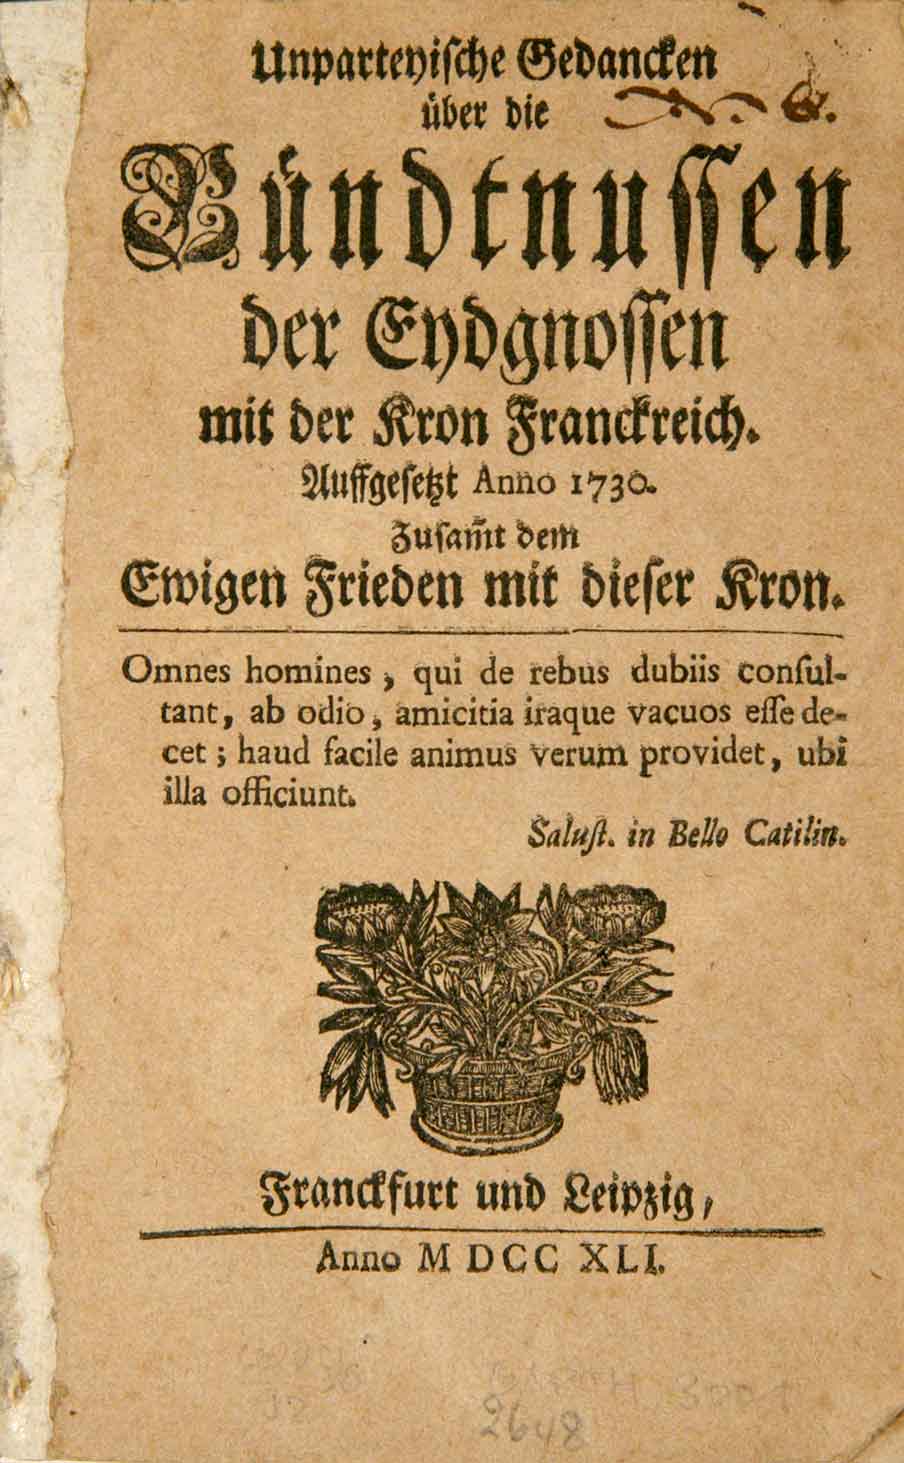  -  Unparteyische Gedancken ber die Bndtnussen der Eydgnossen mit der Kron Franckreich. Auffgesetzt Anno 1730. Zusammt dem Ewigen Frieden mit dieser Kron.   